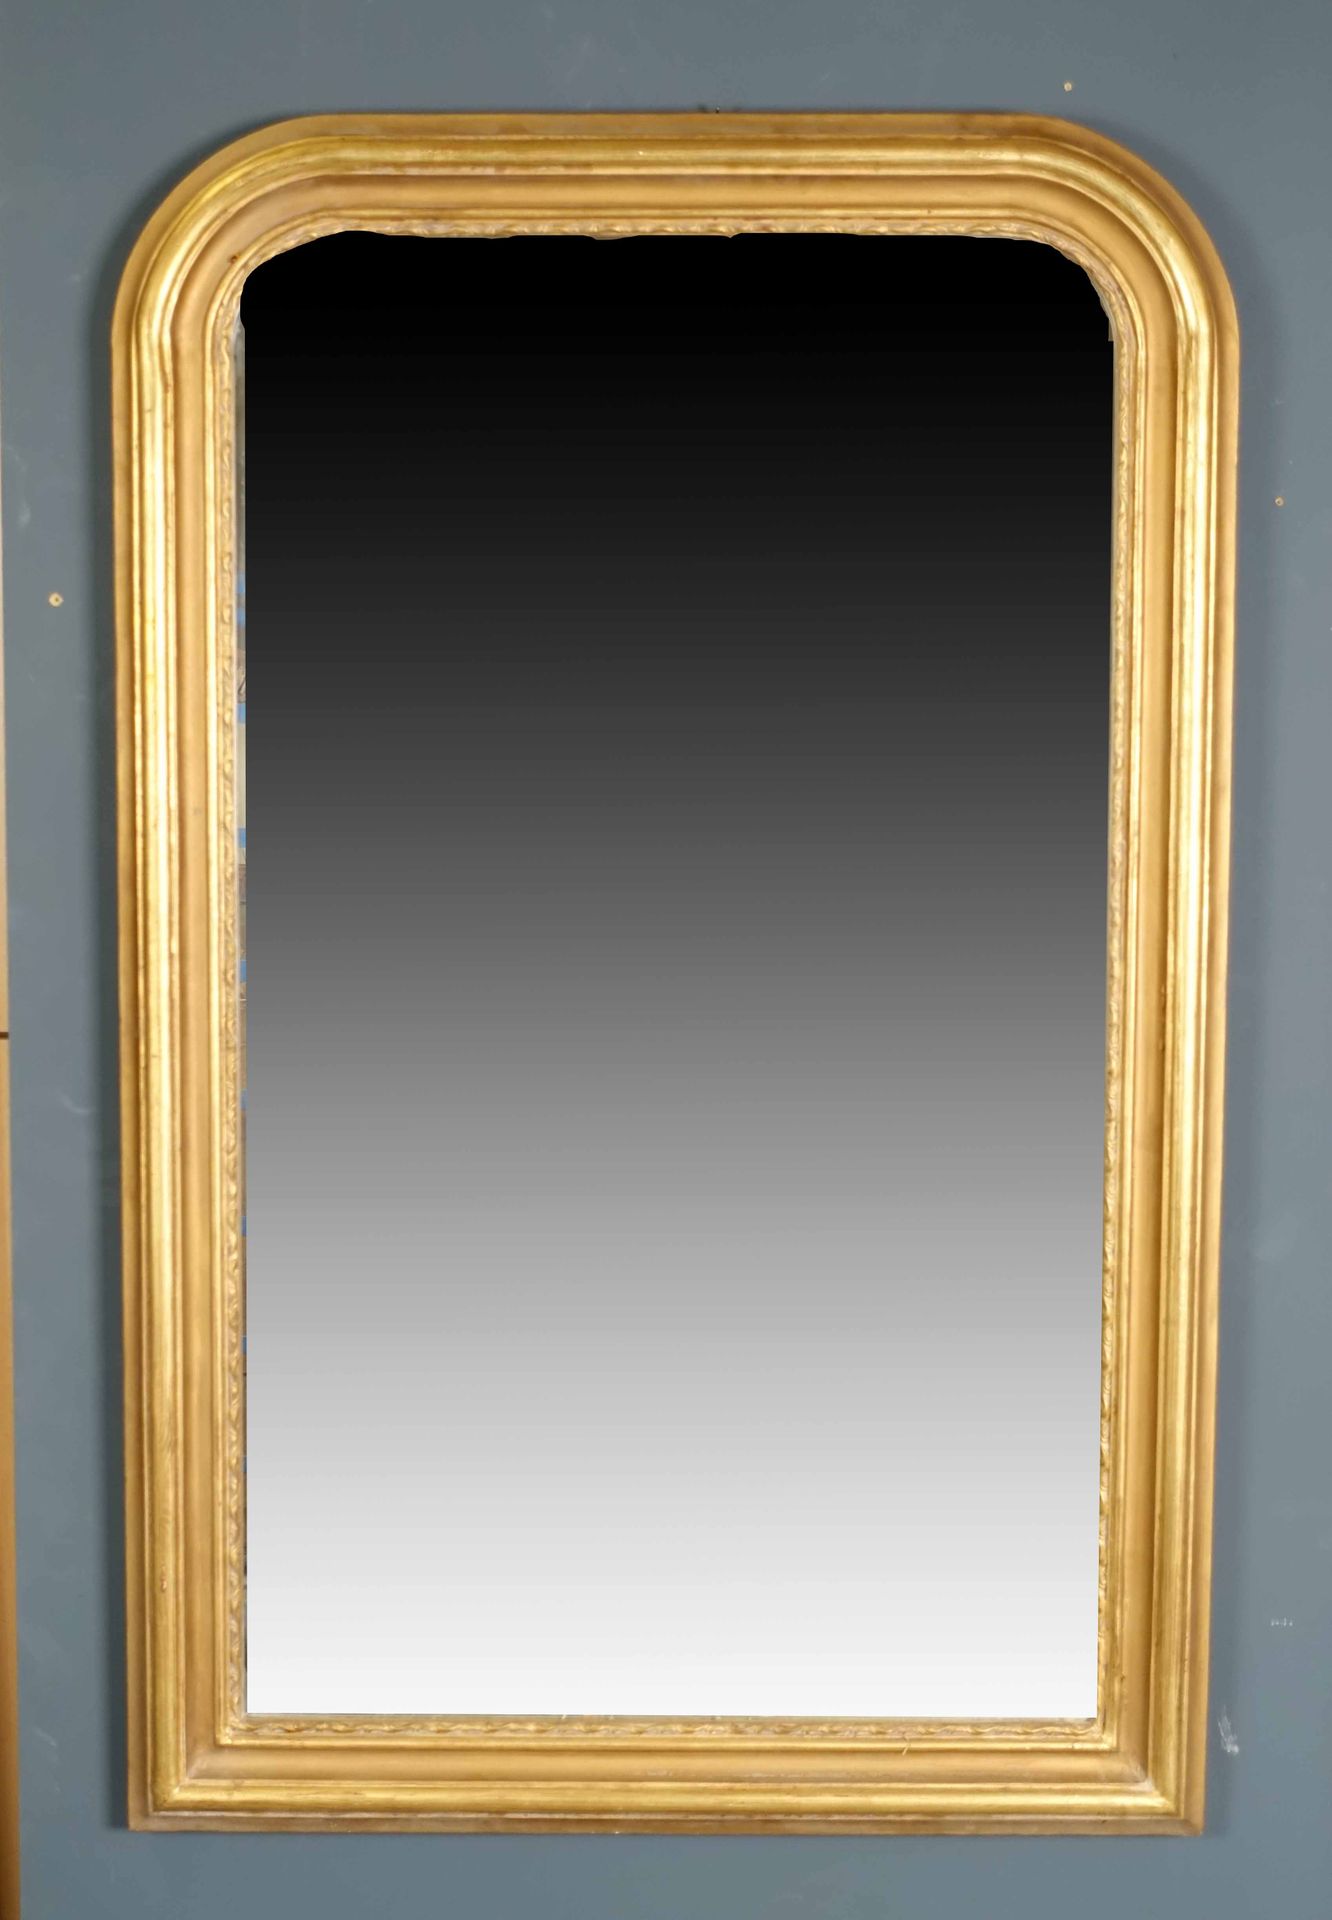 Miroir de Cheminée. Marco moldeado. Madera dorada. Tamaño : 137 x 91 cm.